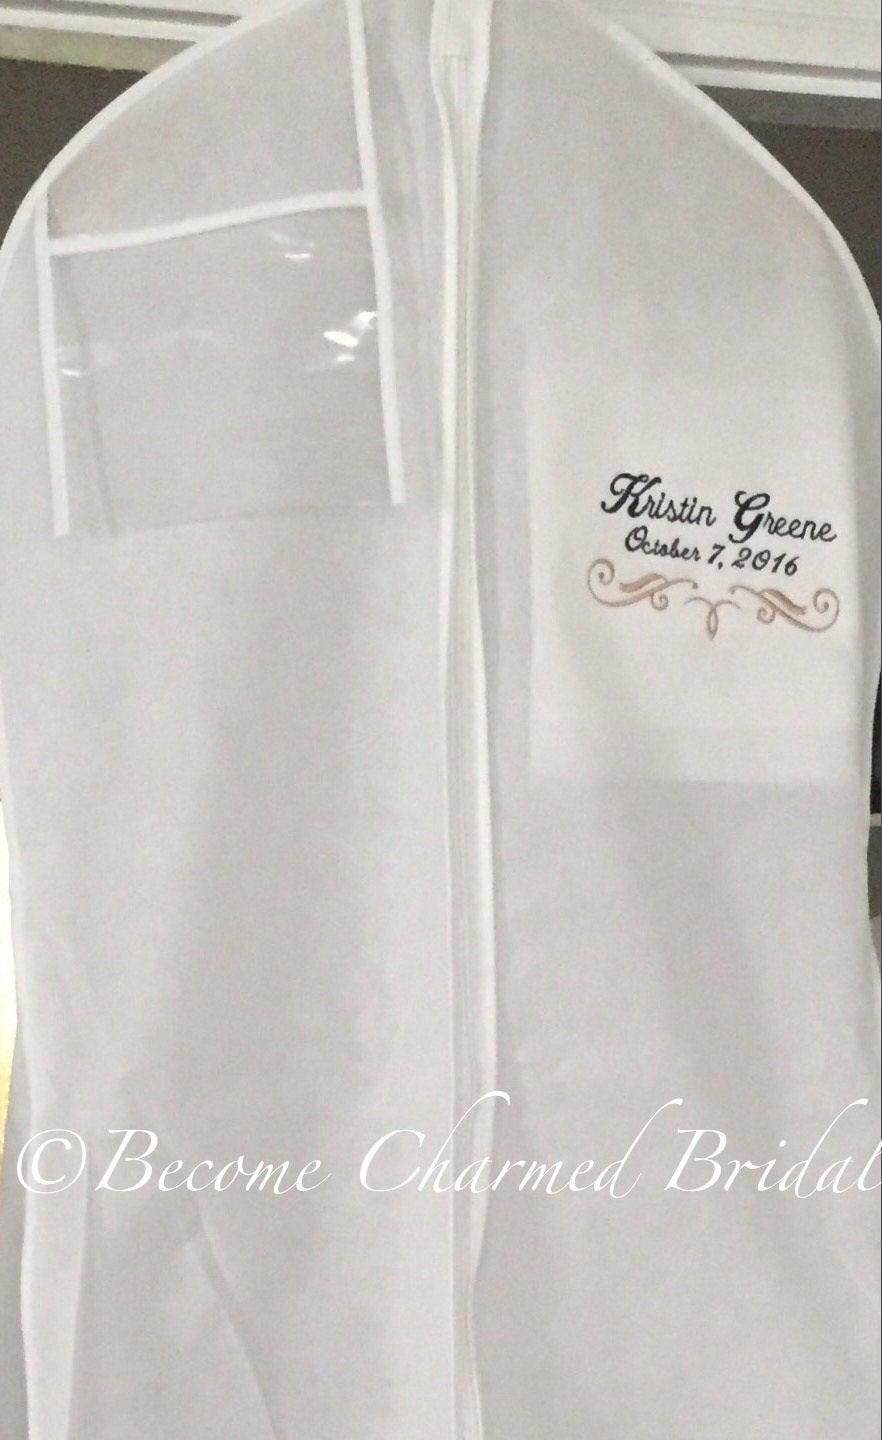 زفاف - 72" Embroidered Breathable Wedding Gown Dress Garment Bag Personalized, 2-line, Storage, Preserving, Protection, White, Extra Deep Gusset